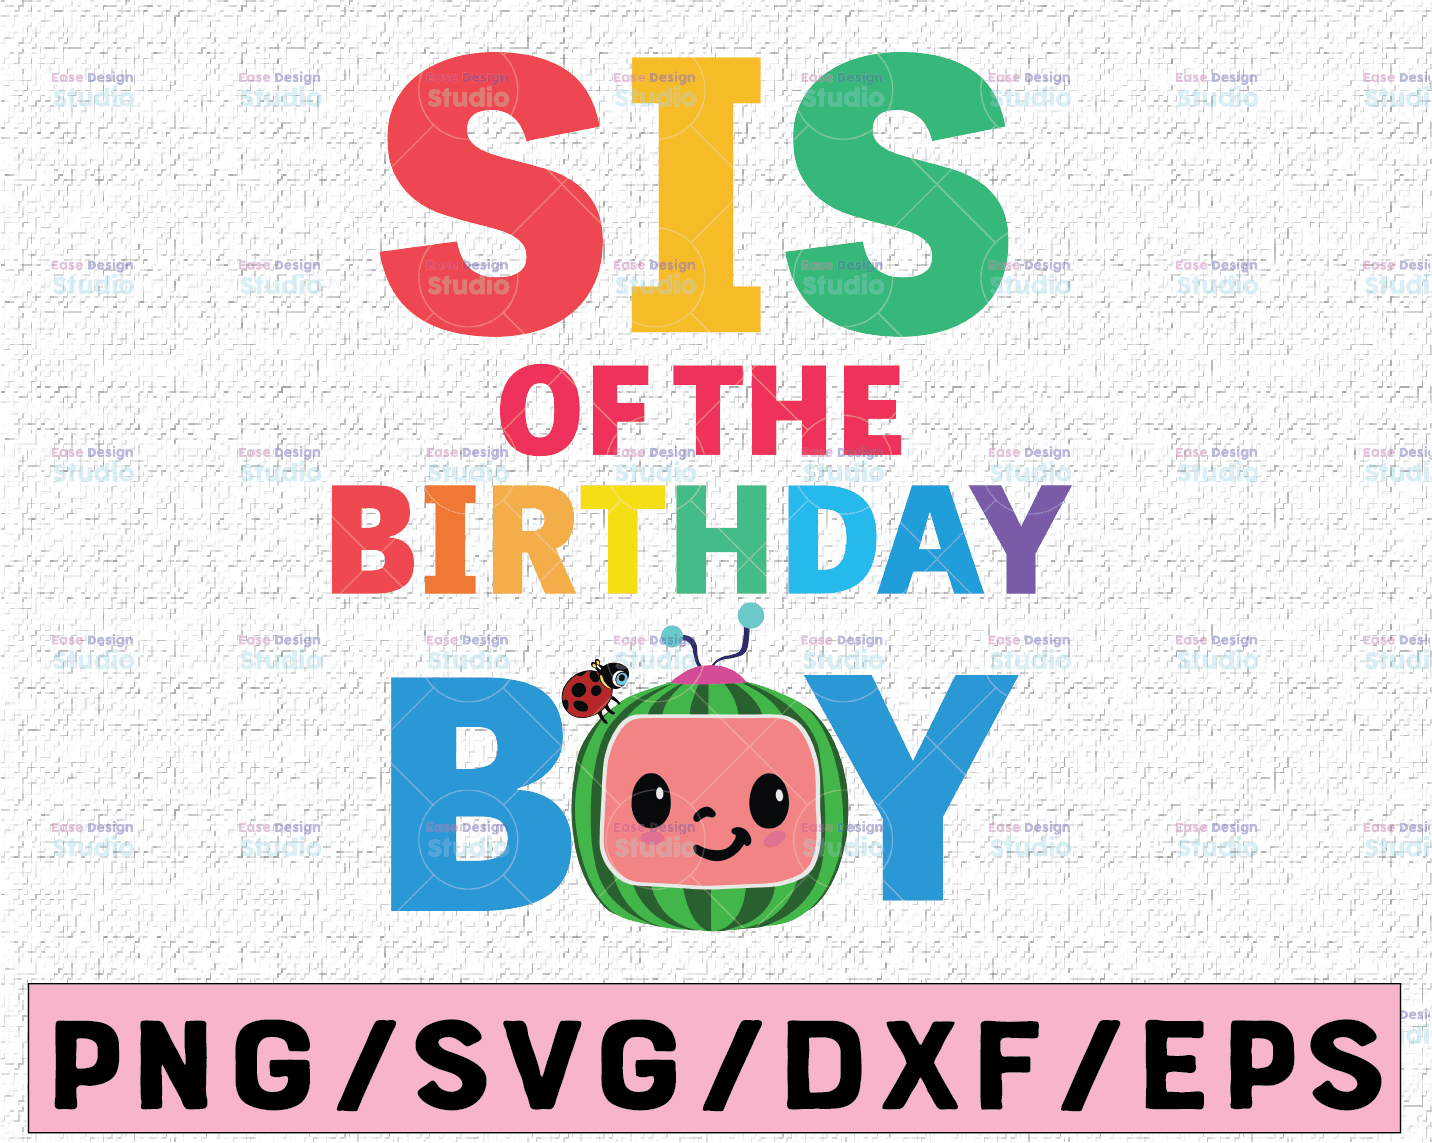 Download Cocomelon Sis Birthday Boy Svg Coco Melon Svg Cocomelon Bundle Svg Cocomelon Birthday Svg Watermelon Birthday Svg Png Eps Jpg Dxf Vectorency